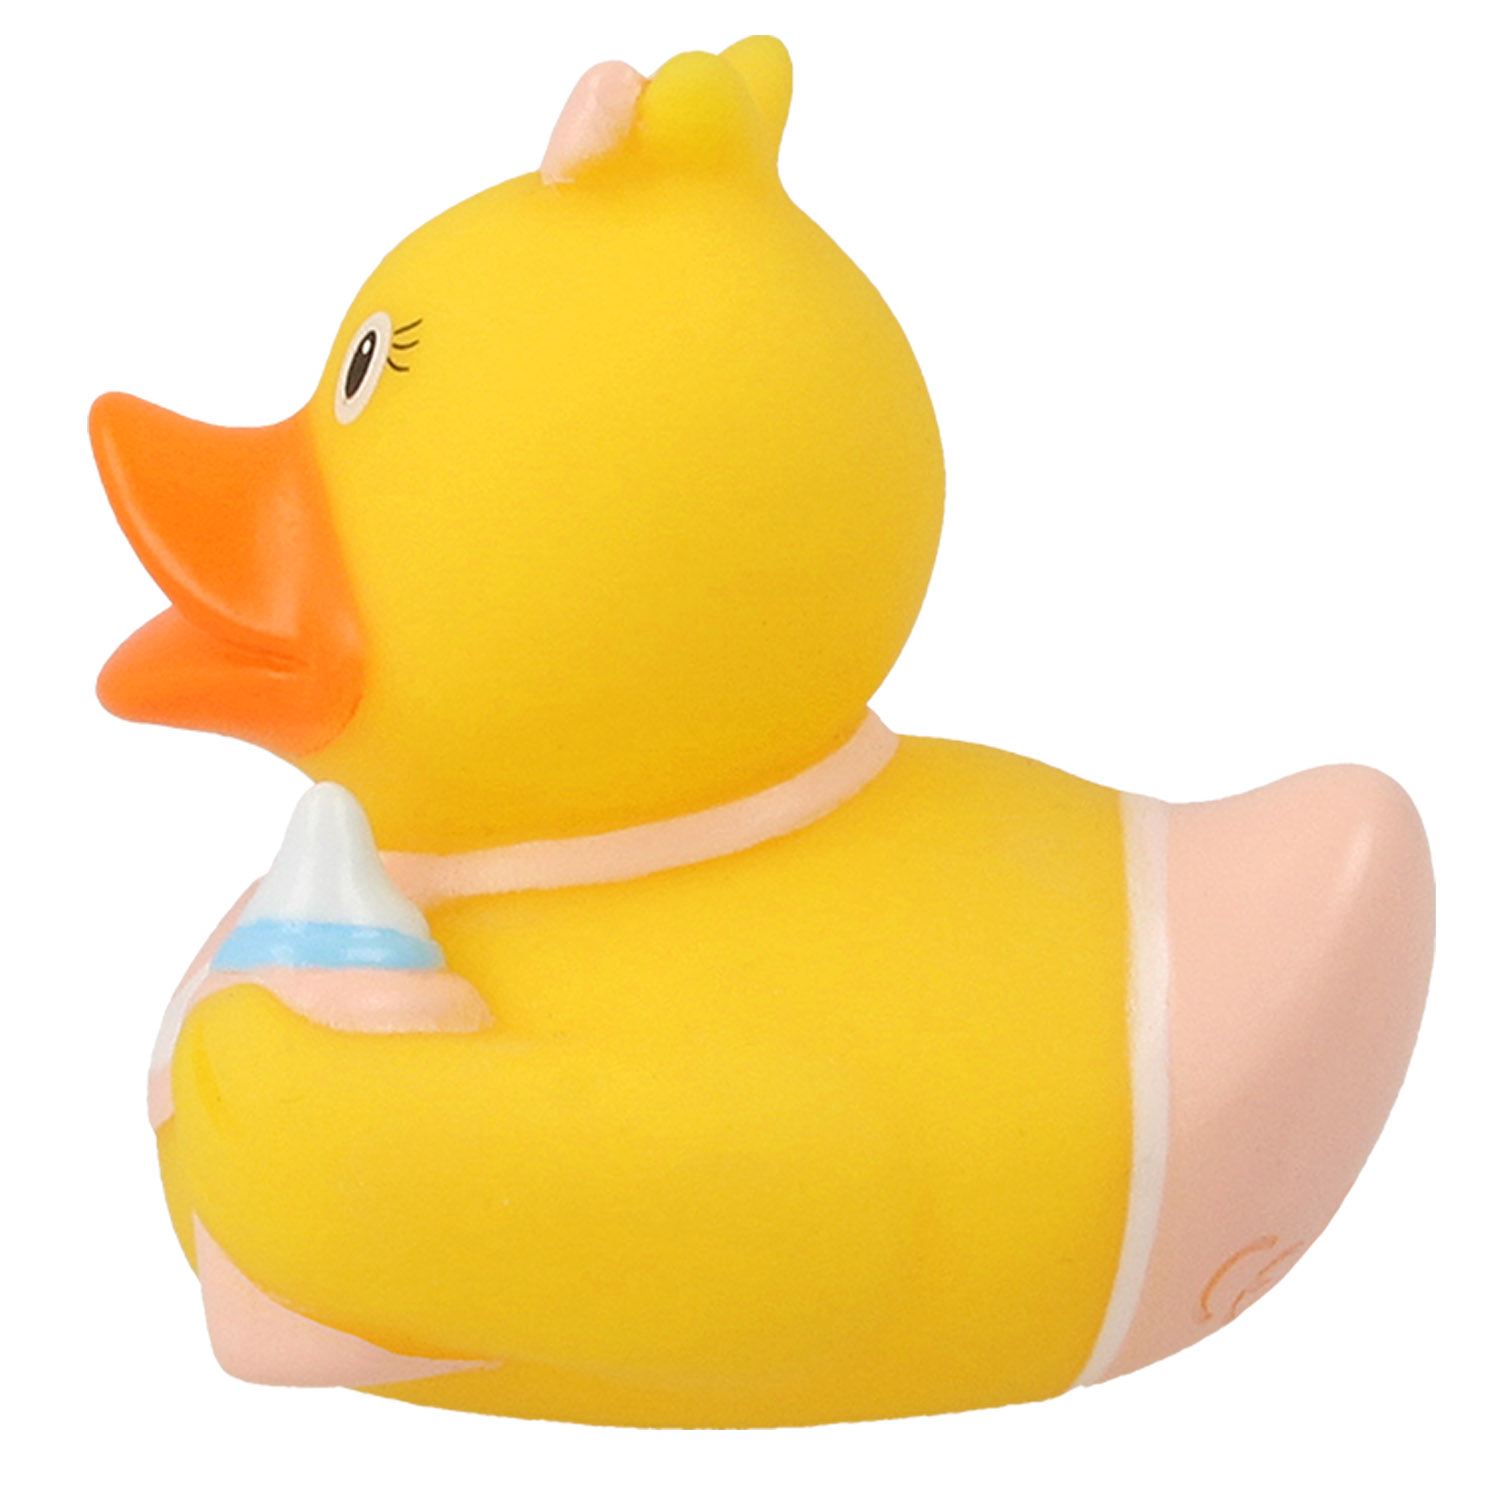 Игрушка Funny ducks для ванной Ребенок девочка уточка 1848 - фото 2